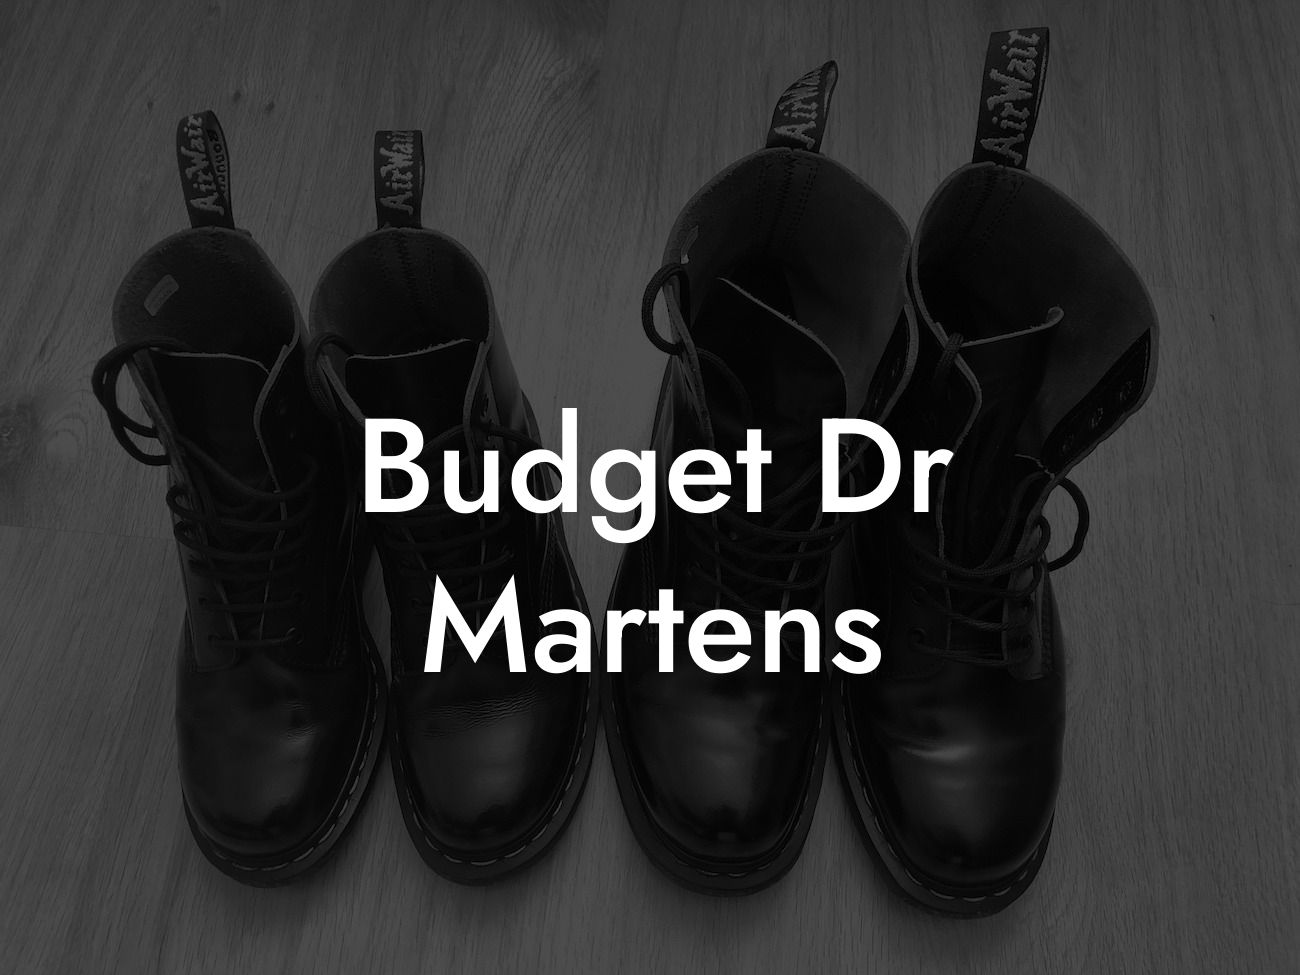 Budget Dr Martens